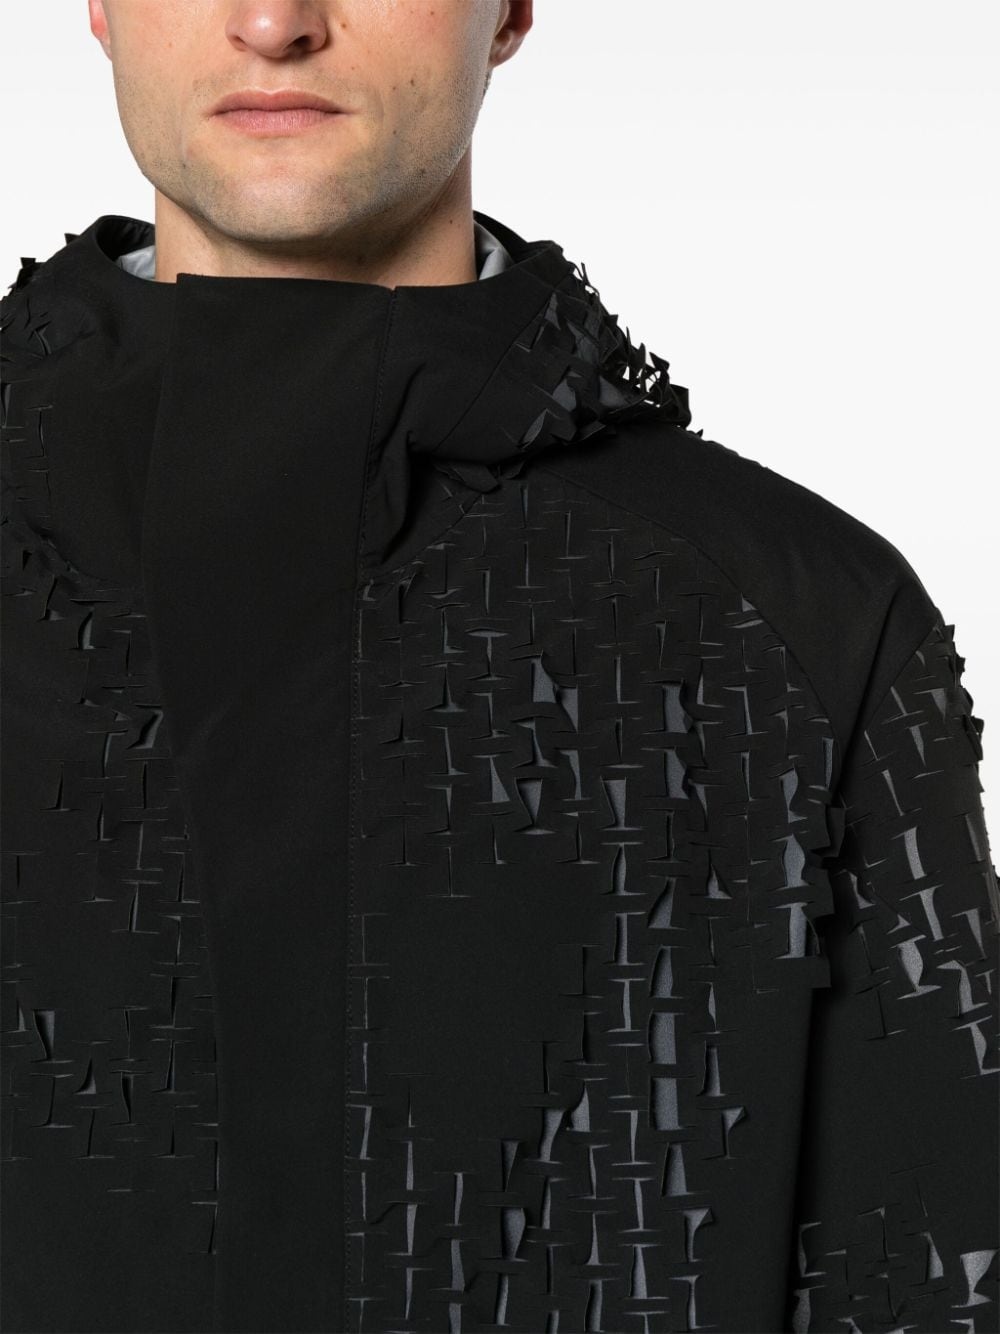 Morphogens lasercut-pattern hooded jacket - 5